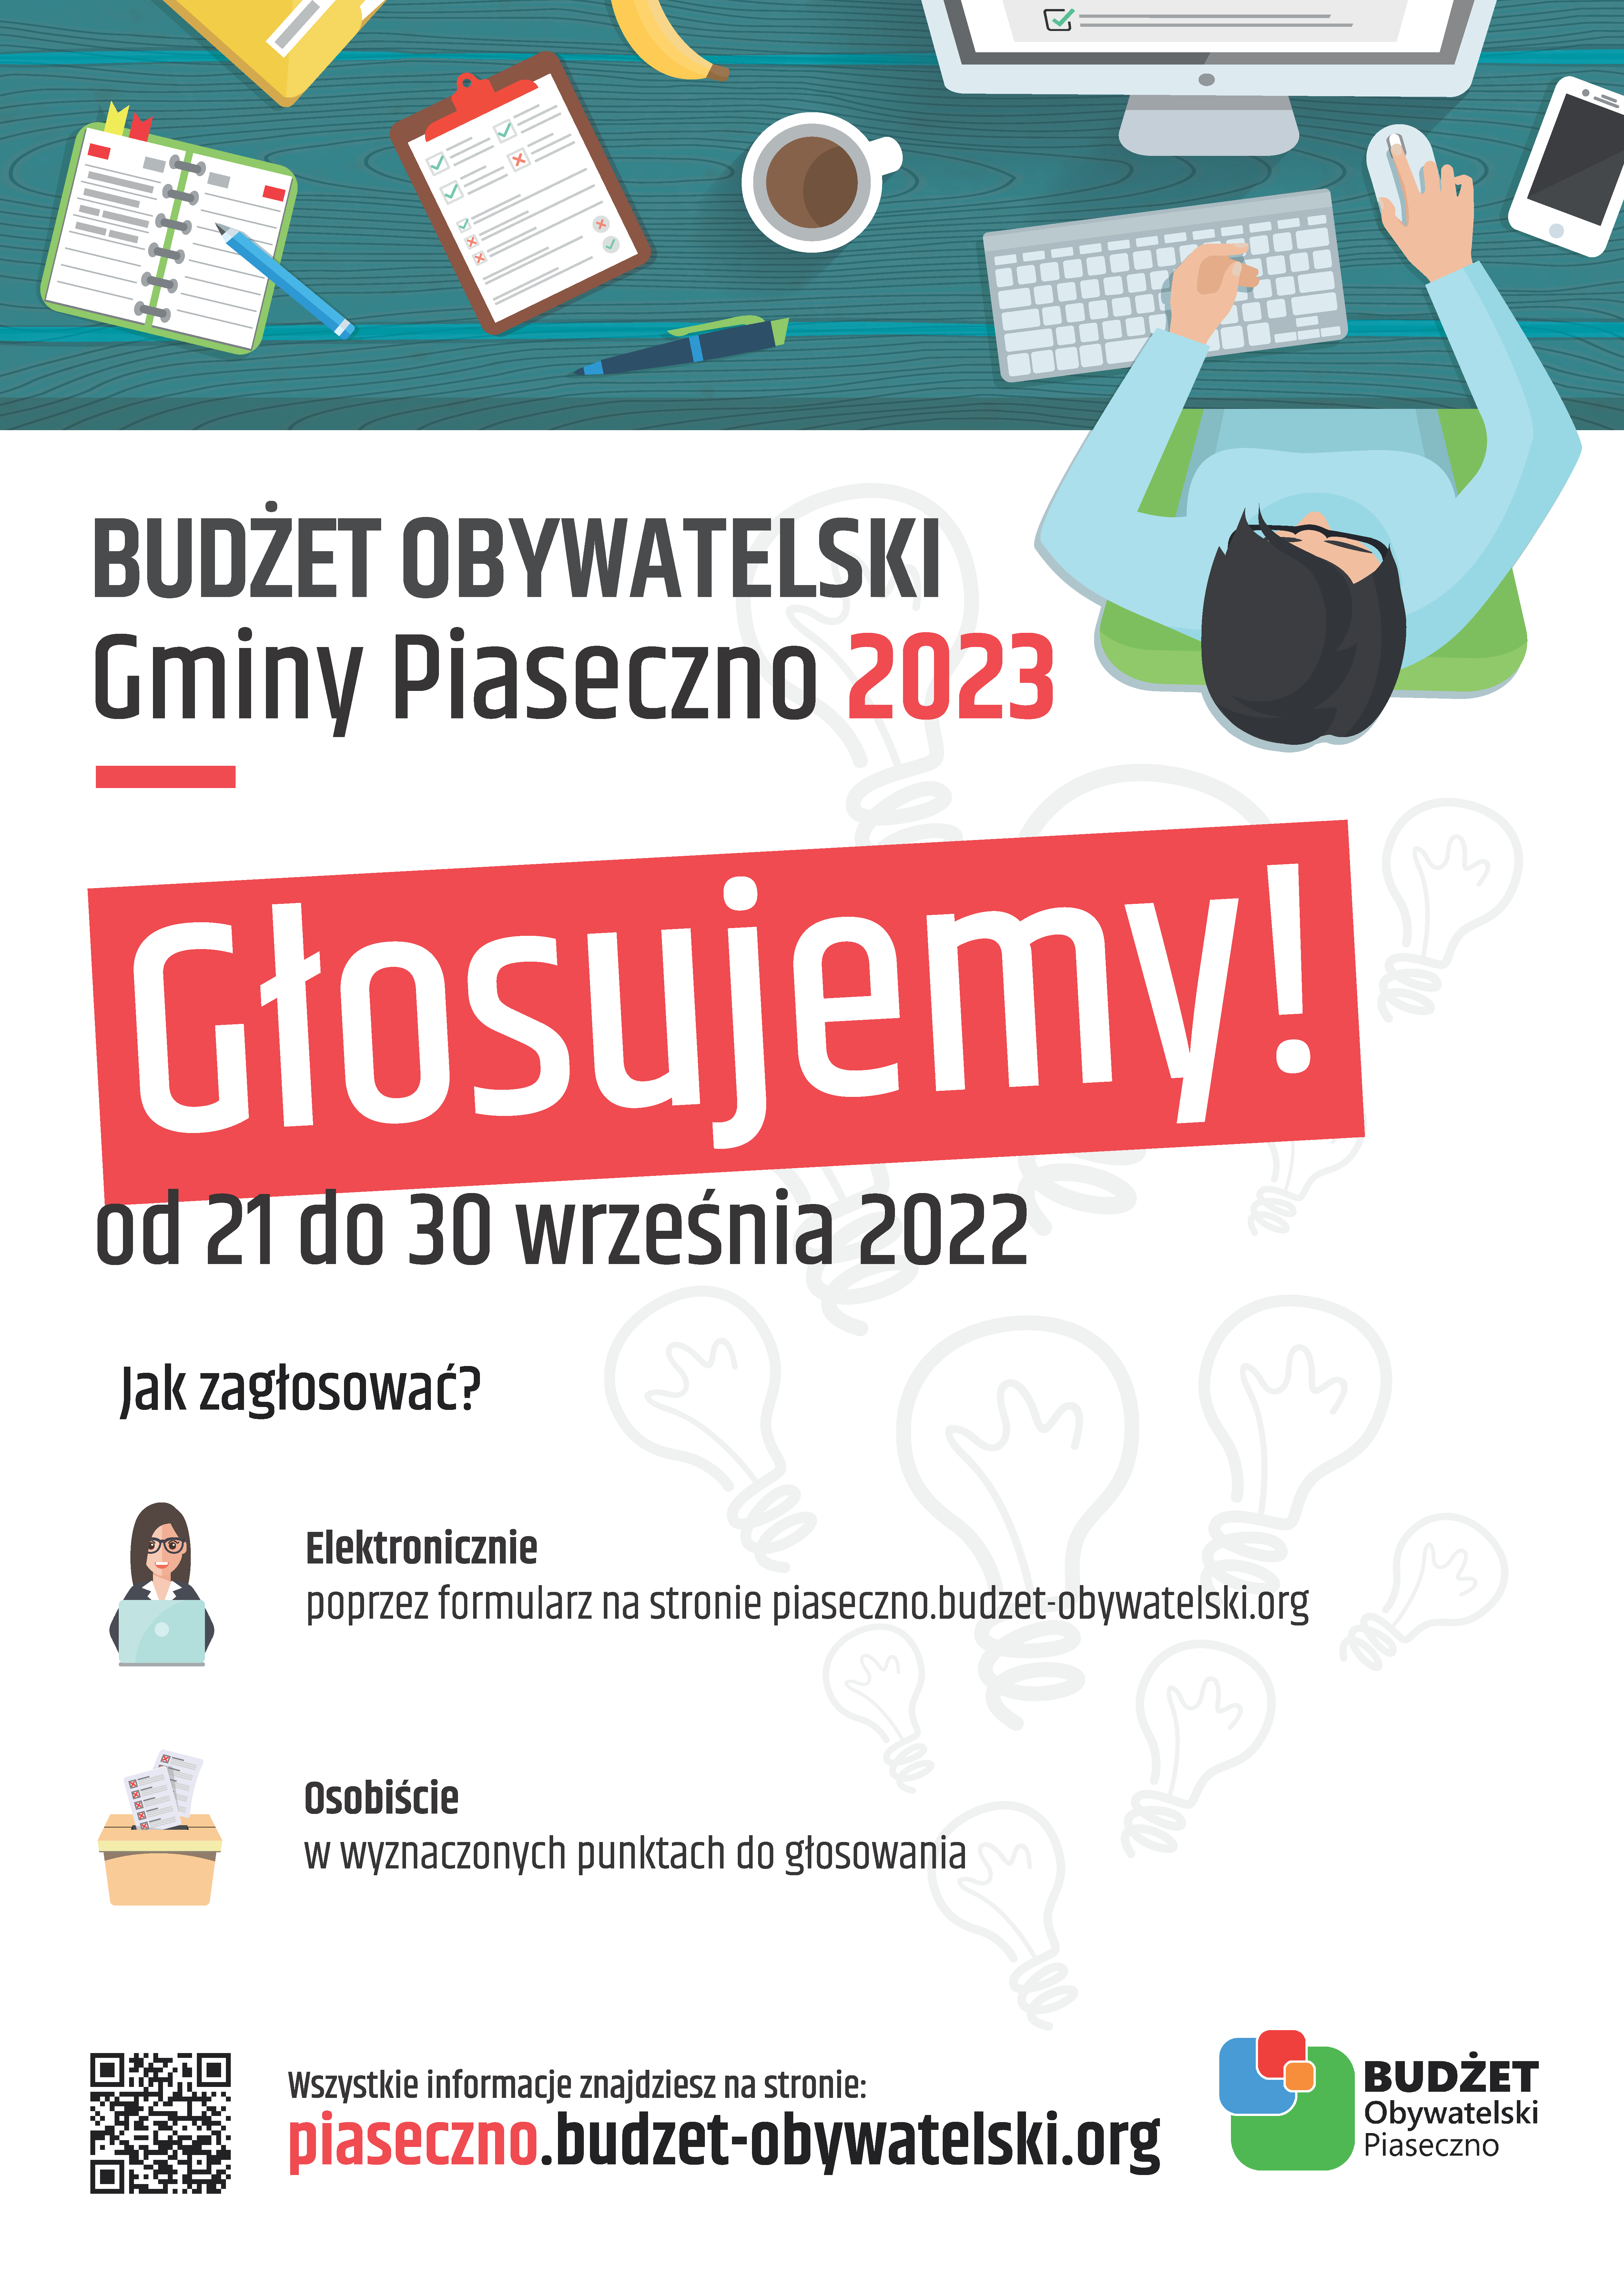 Głosujemy w ramach Budżetu Obywatelskiego Gminy Piaseczno 2023